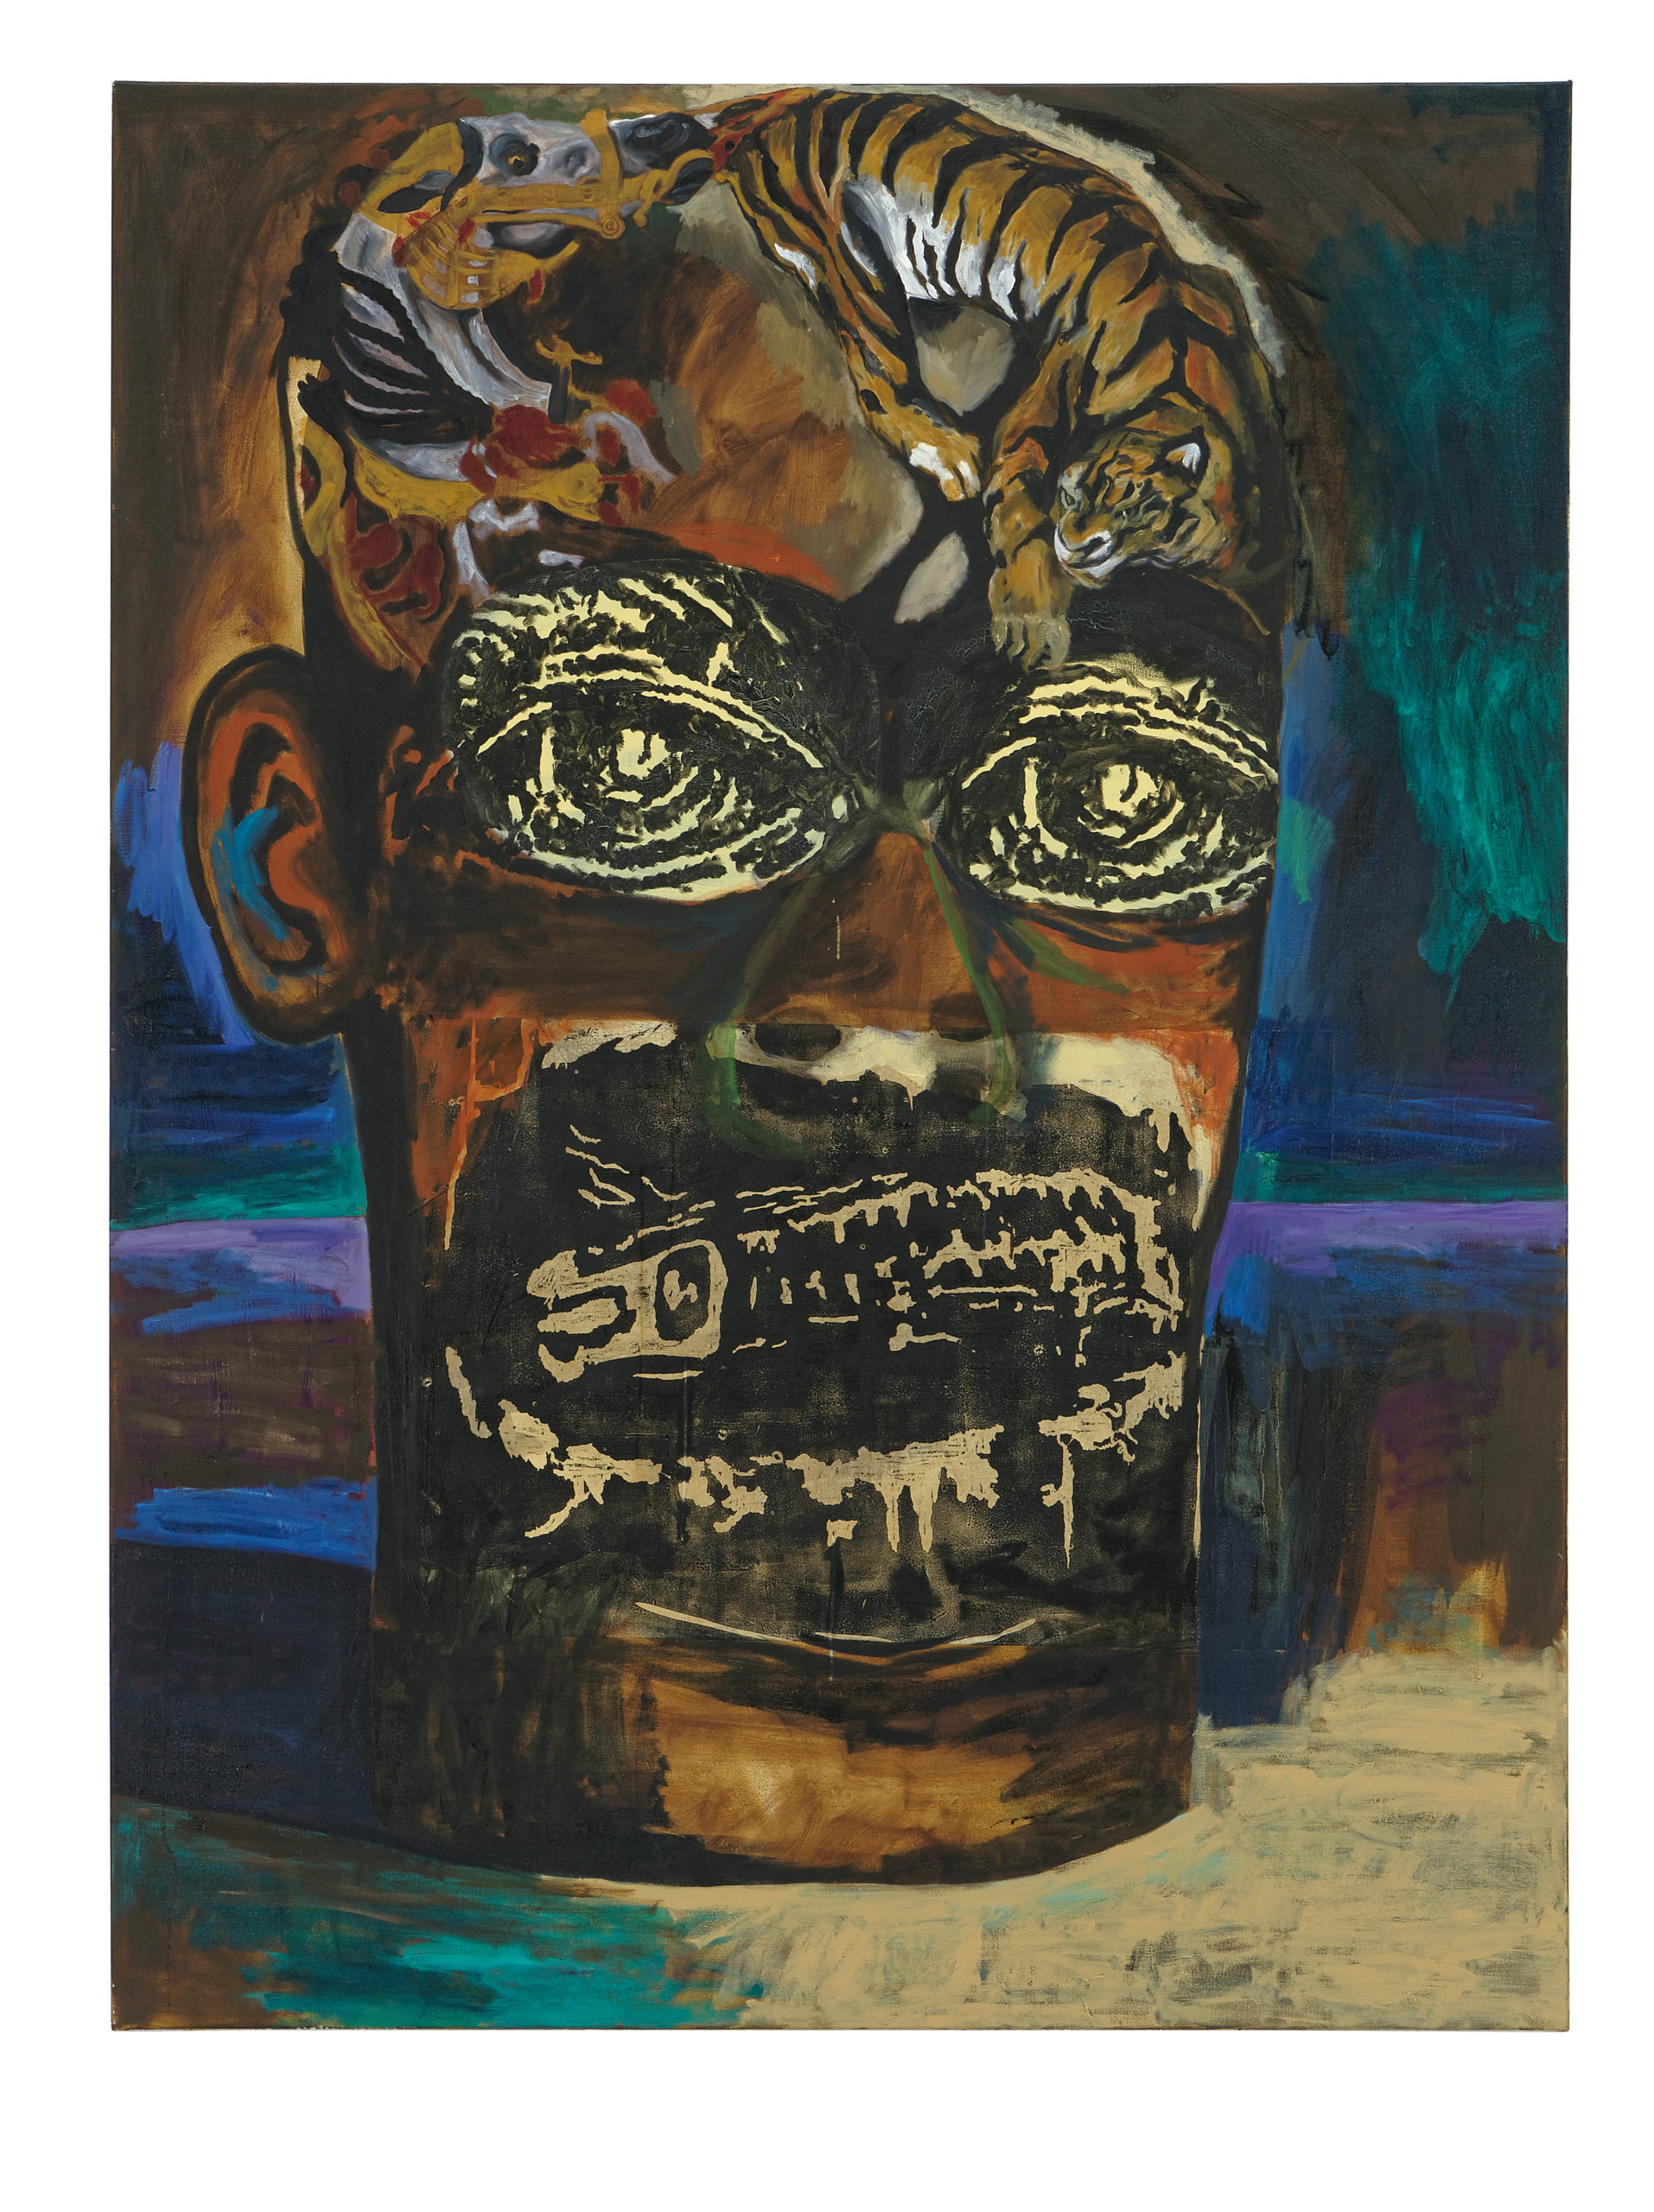 Damien Deroubaix, Peintre (Delacroix), 2017, huile et collage sur toile, 200 x 150 cm, © Blaise Adilon, MAMC+ Saint-Etienne : Adagp, Paris, 2020, courtesy de l’artiste et galerie In Situ – fabienne leclerc, Grand Paris